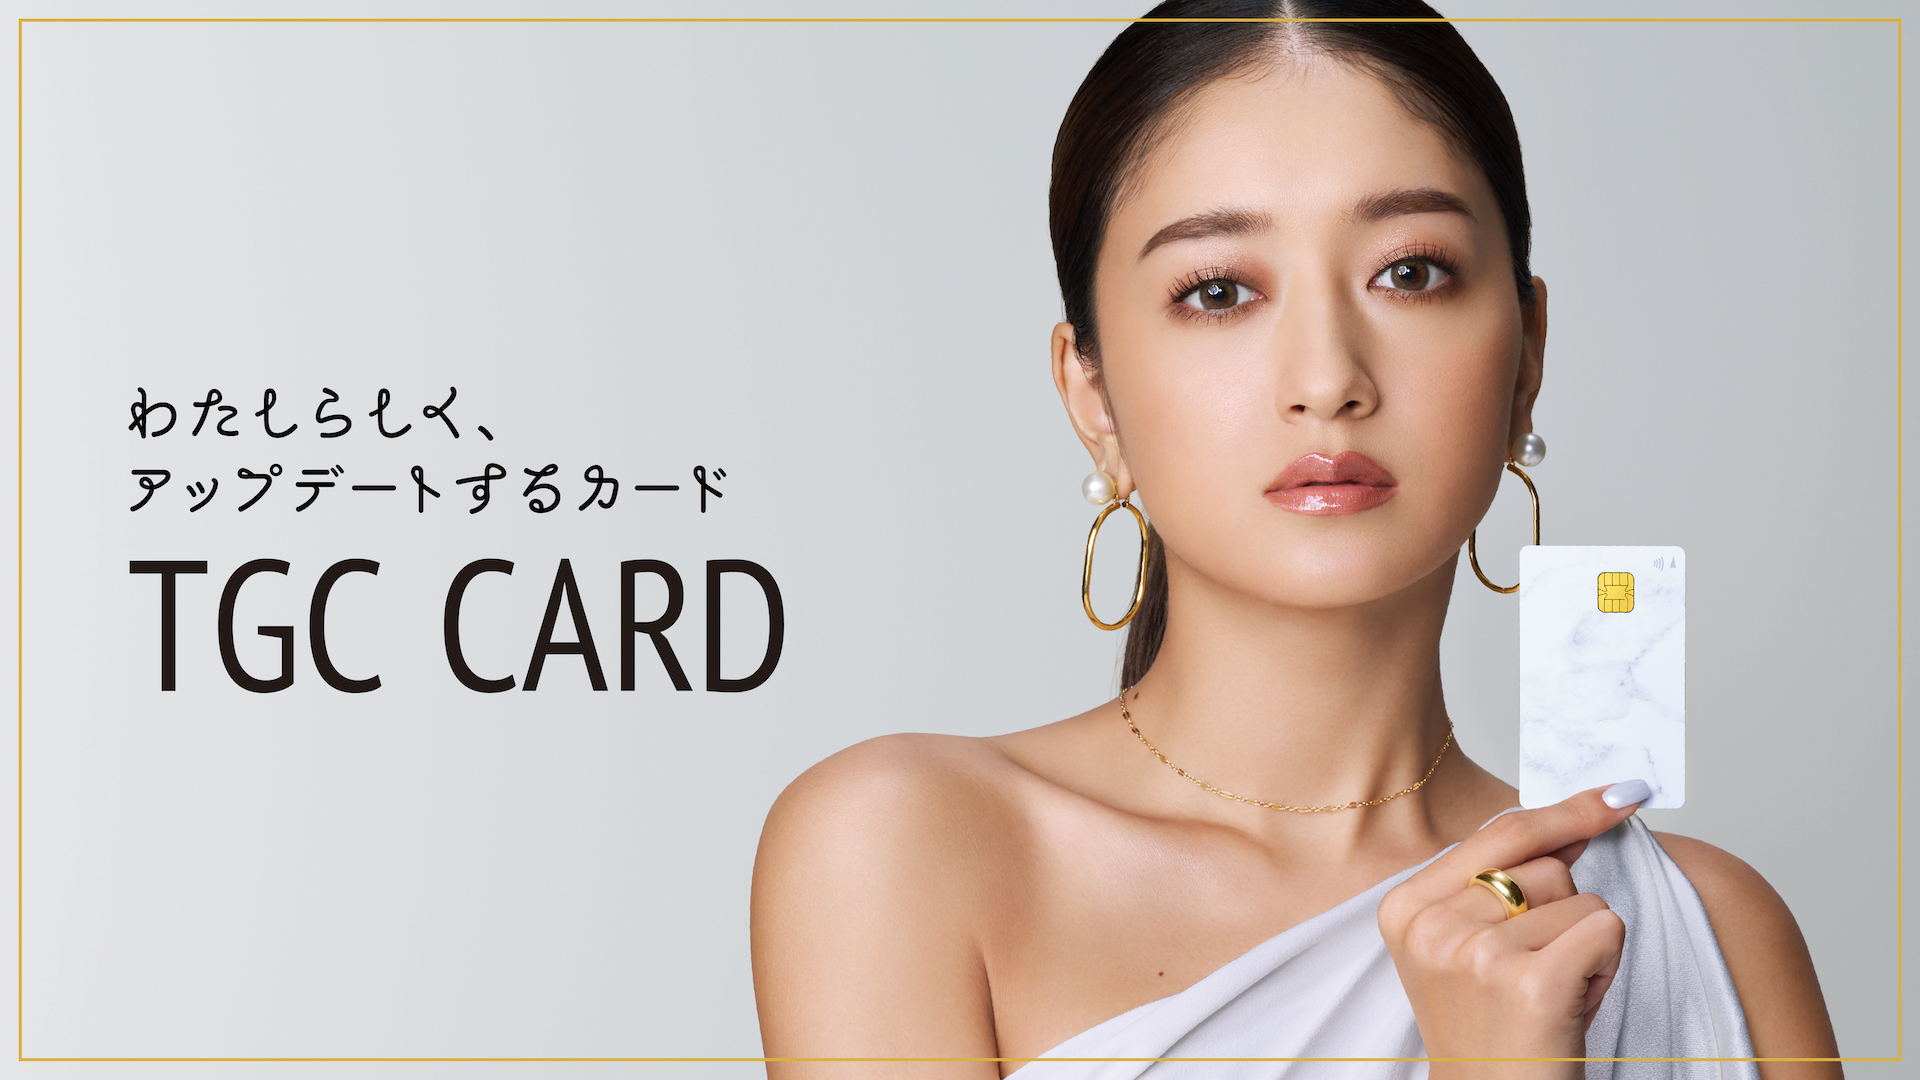 イオンカード(TGCデザイン)は“TGC CARD”としてリニューアル！
池田美優さんが新イメージモデルに就任